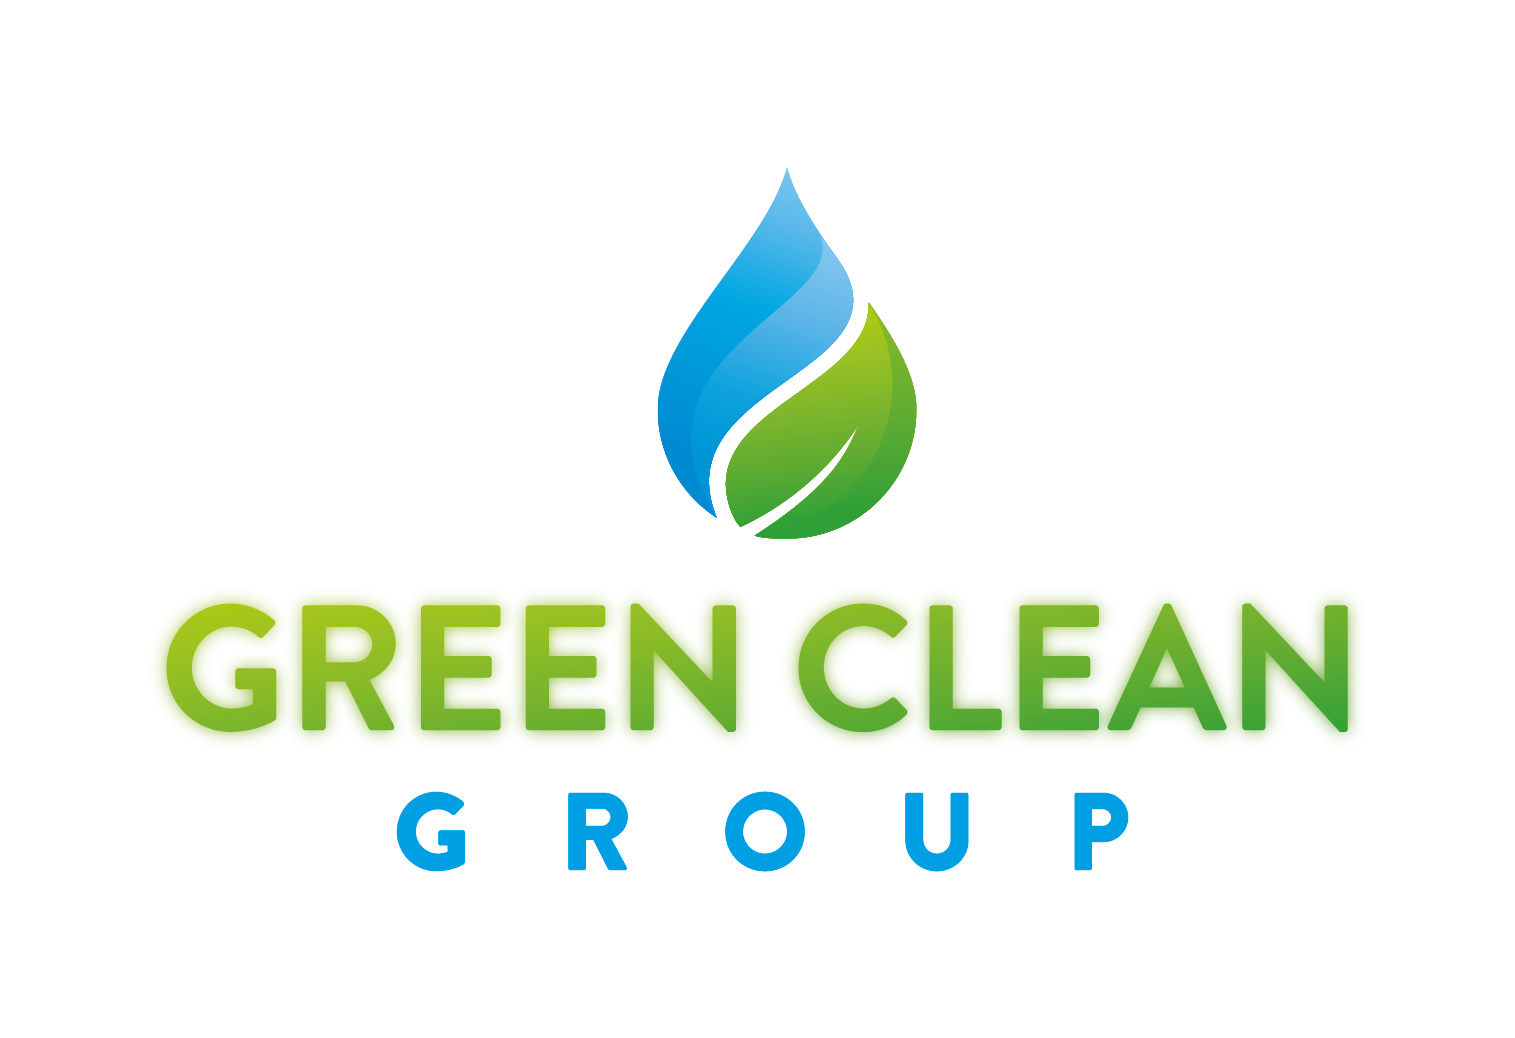 Green Clean Group logo met witte waas